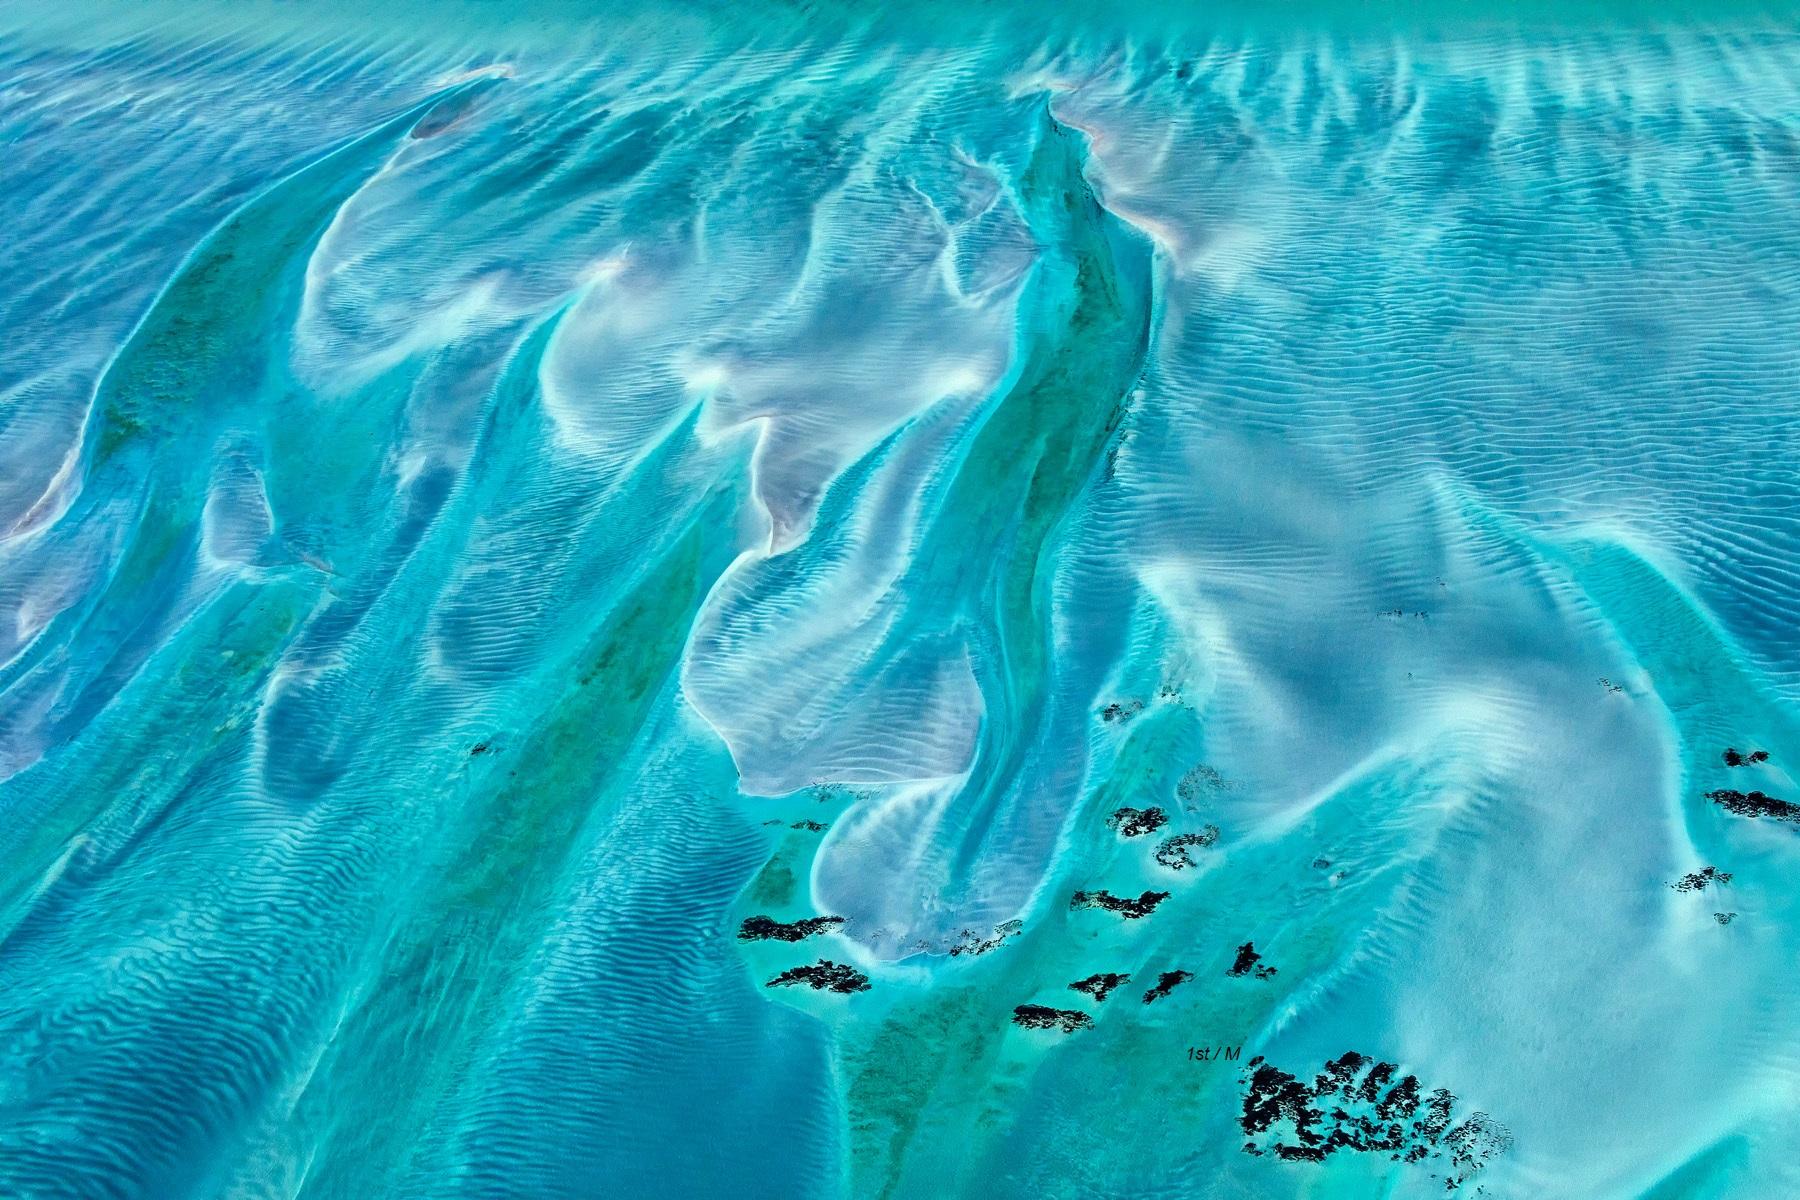 Landscape Photograph MAE Curates - 47.2x63in. Photographie aérienne de la terre, de la terre et de la mer, non encadrée